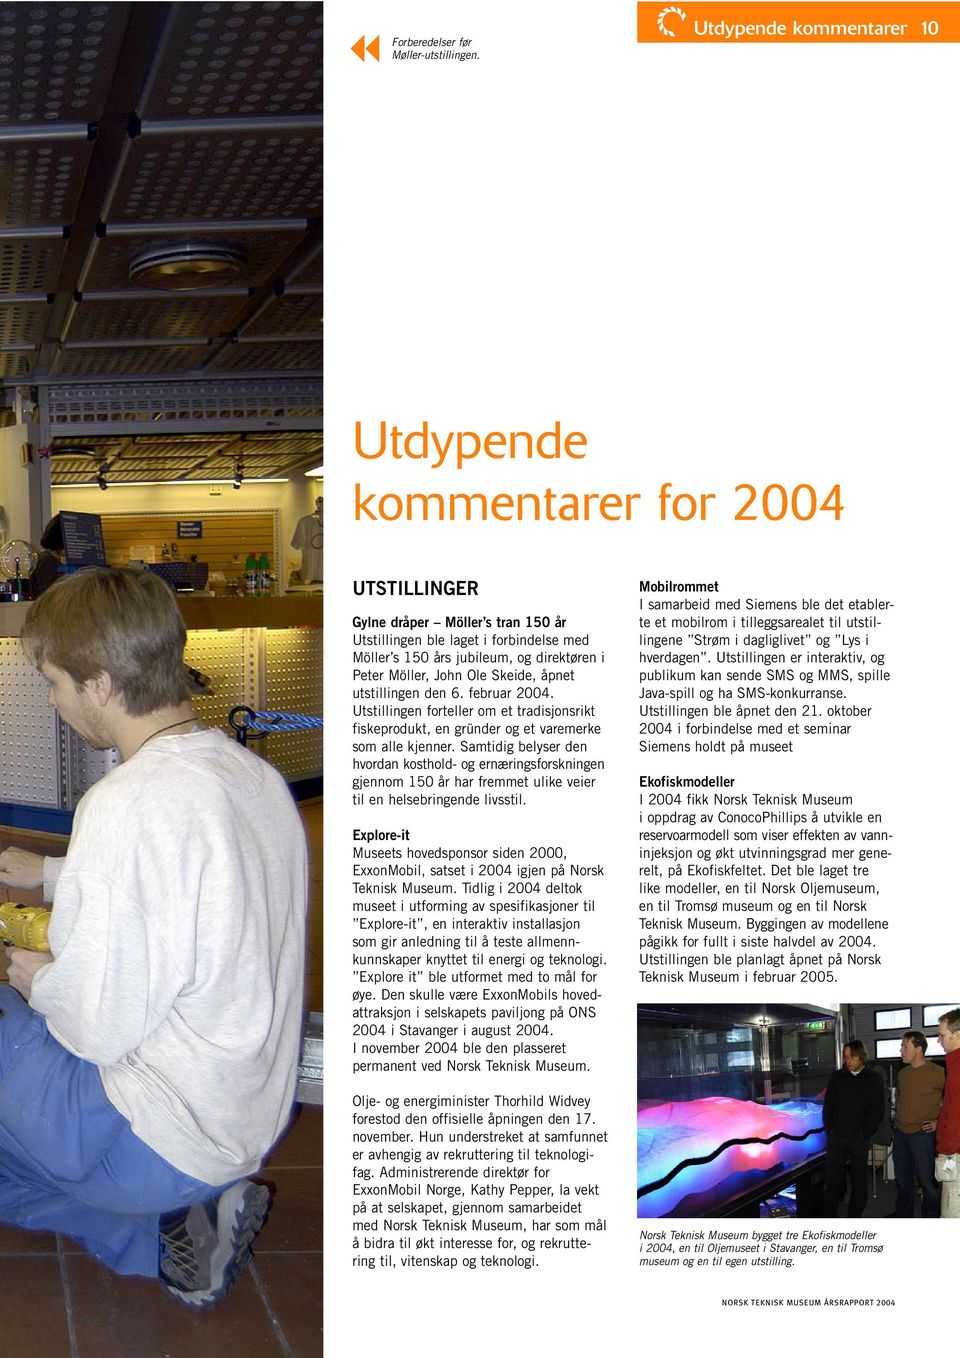 Möller, John Ole Skeide, åpnet utstillingen den 6. februar 2004. Utstillingen forteller om et tradisjonsrikt fiskeprodukt, en gründer og et varemerke som alle kjenner.